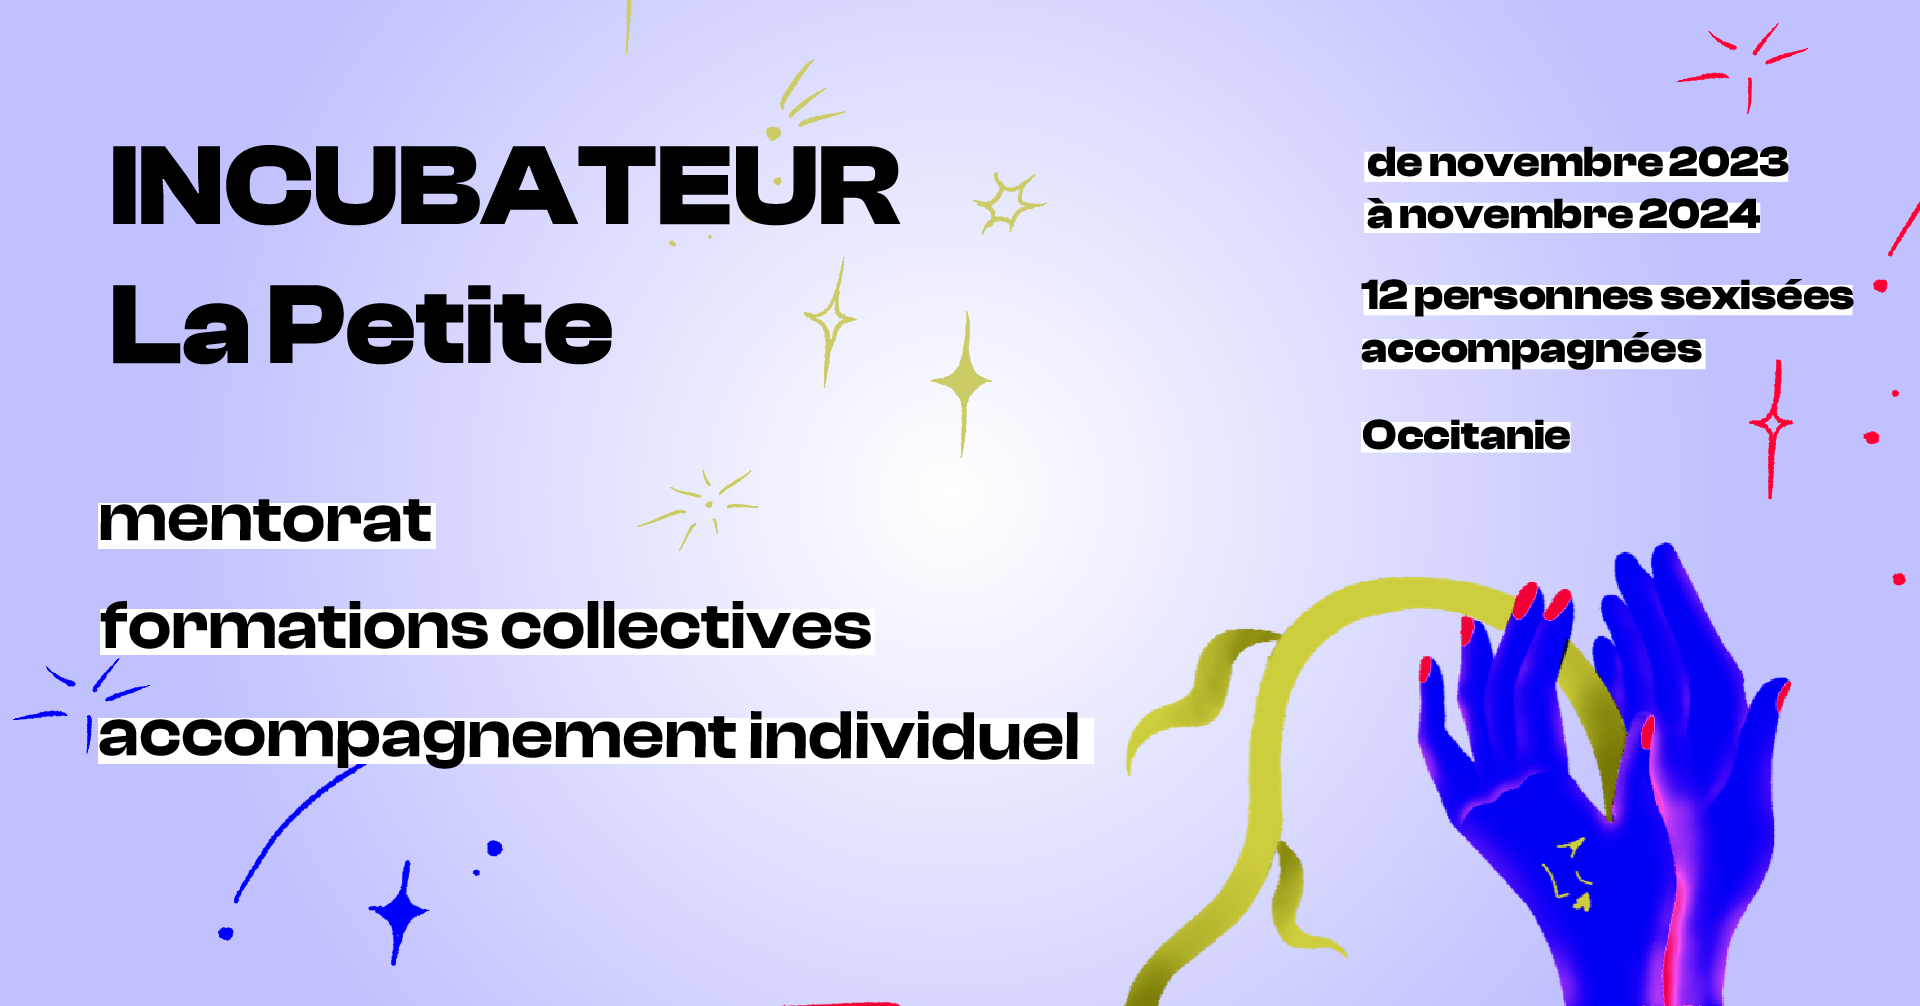 L'Incubateur La Petite aura lieu de novembre 2023 à novembre 2024, il accompagnera 12 personnes sexisées en Occitanie via du mentorat, des formations collectives et un accompagnement individuel.